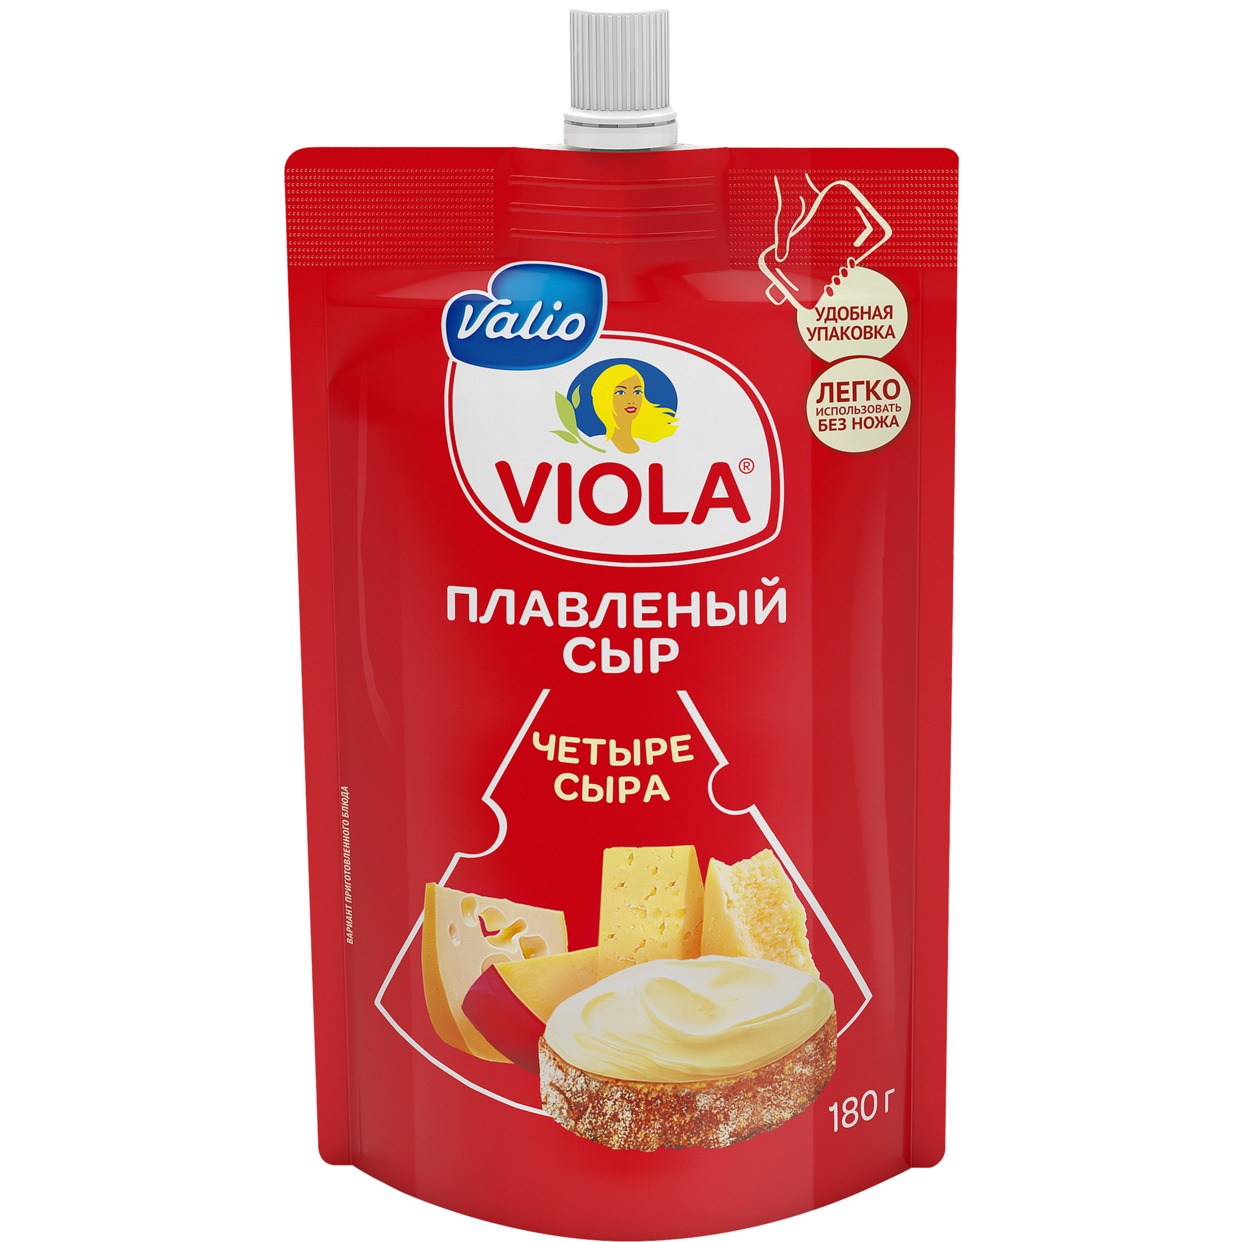 Сыр Виола 4 Сыра, 180 г по акции в Пятерочке